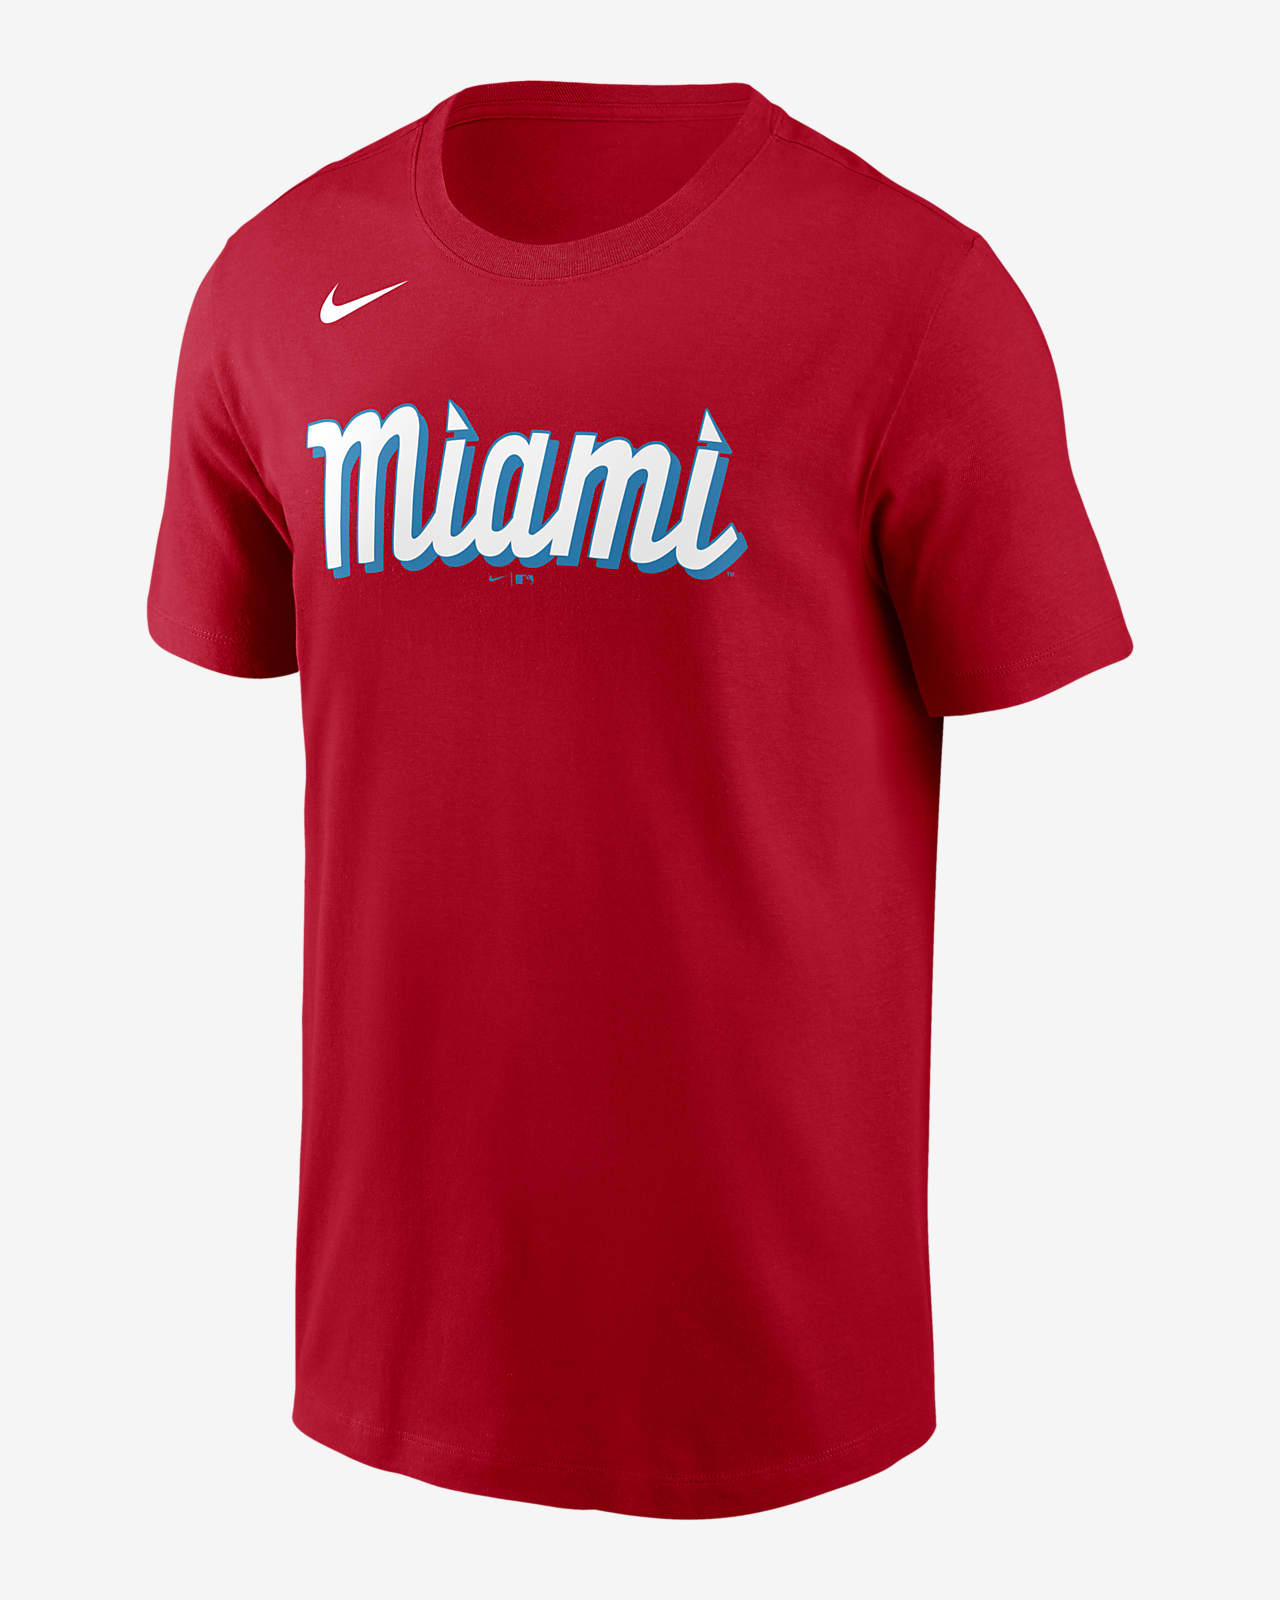 Miami Marlins Jersey, Marlins Baseball Jerseys, Uniforms